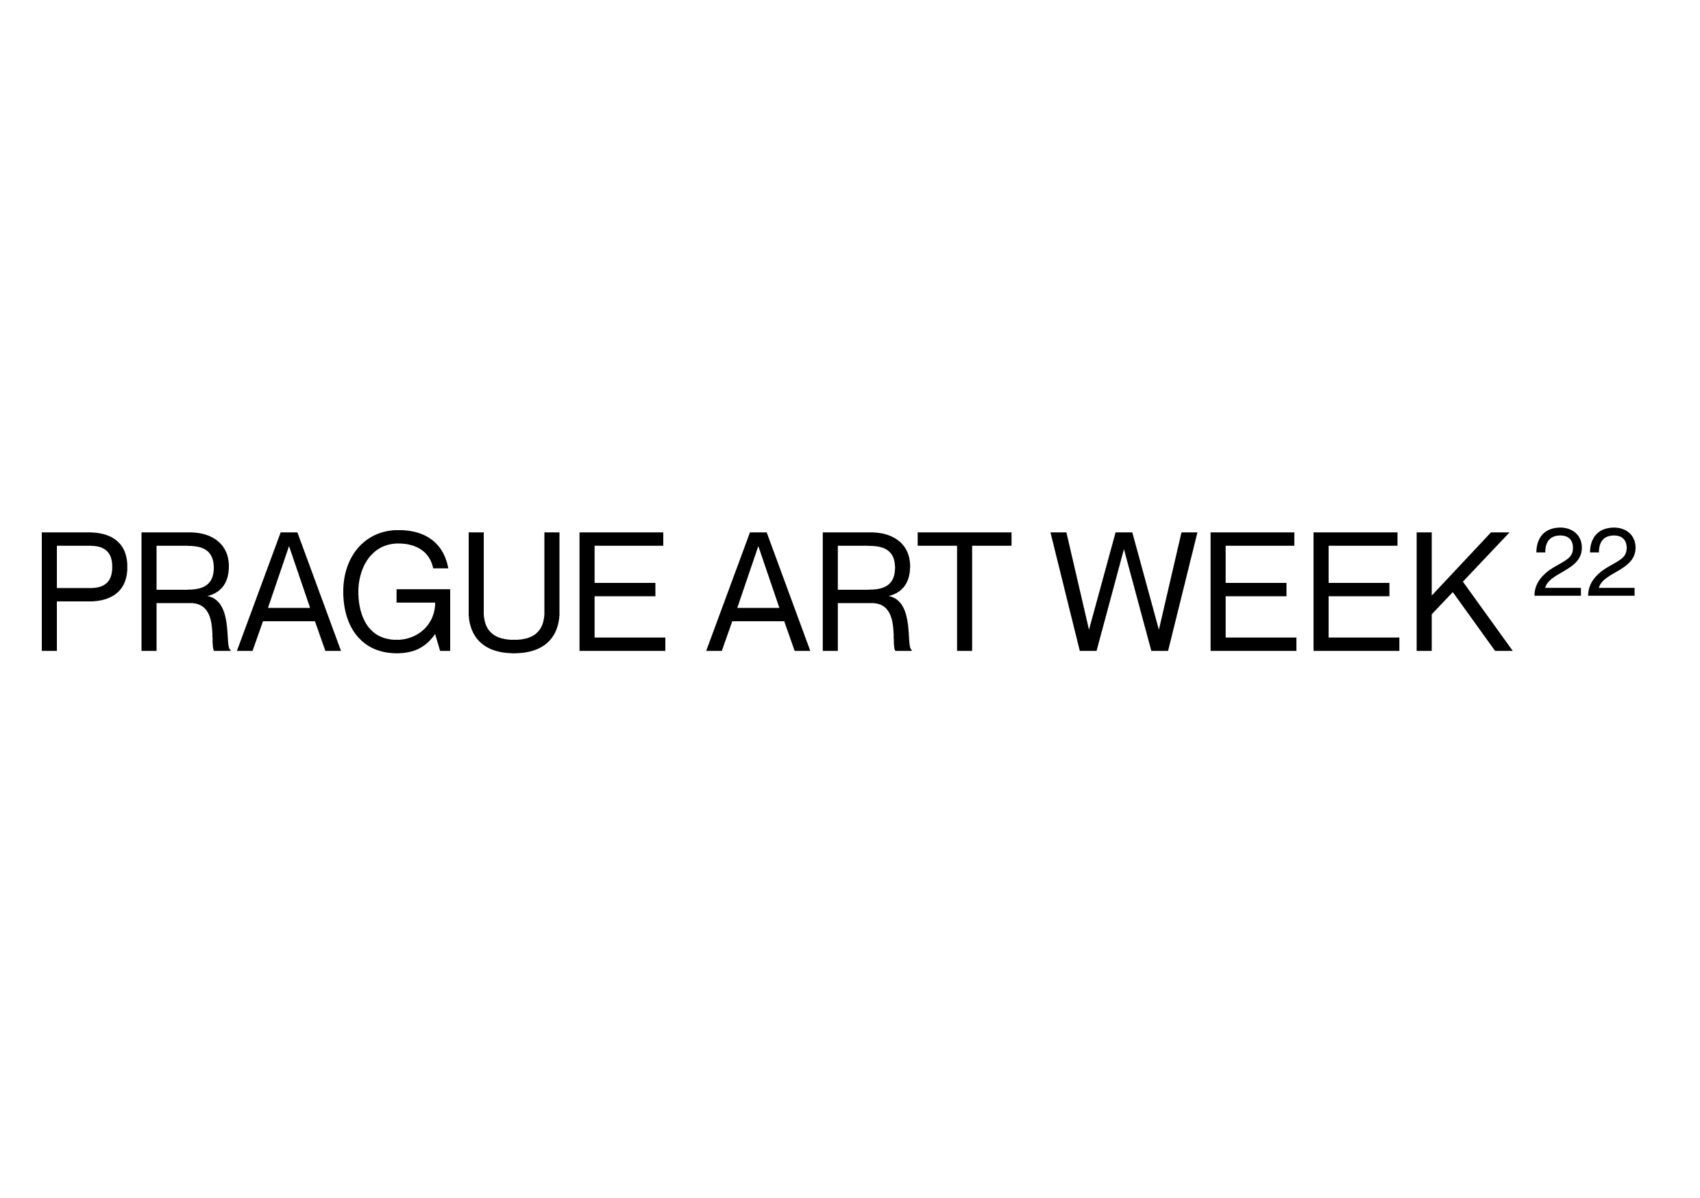 pRAGUE ART WEEK - LOGO